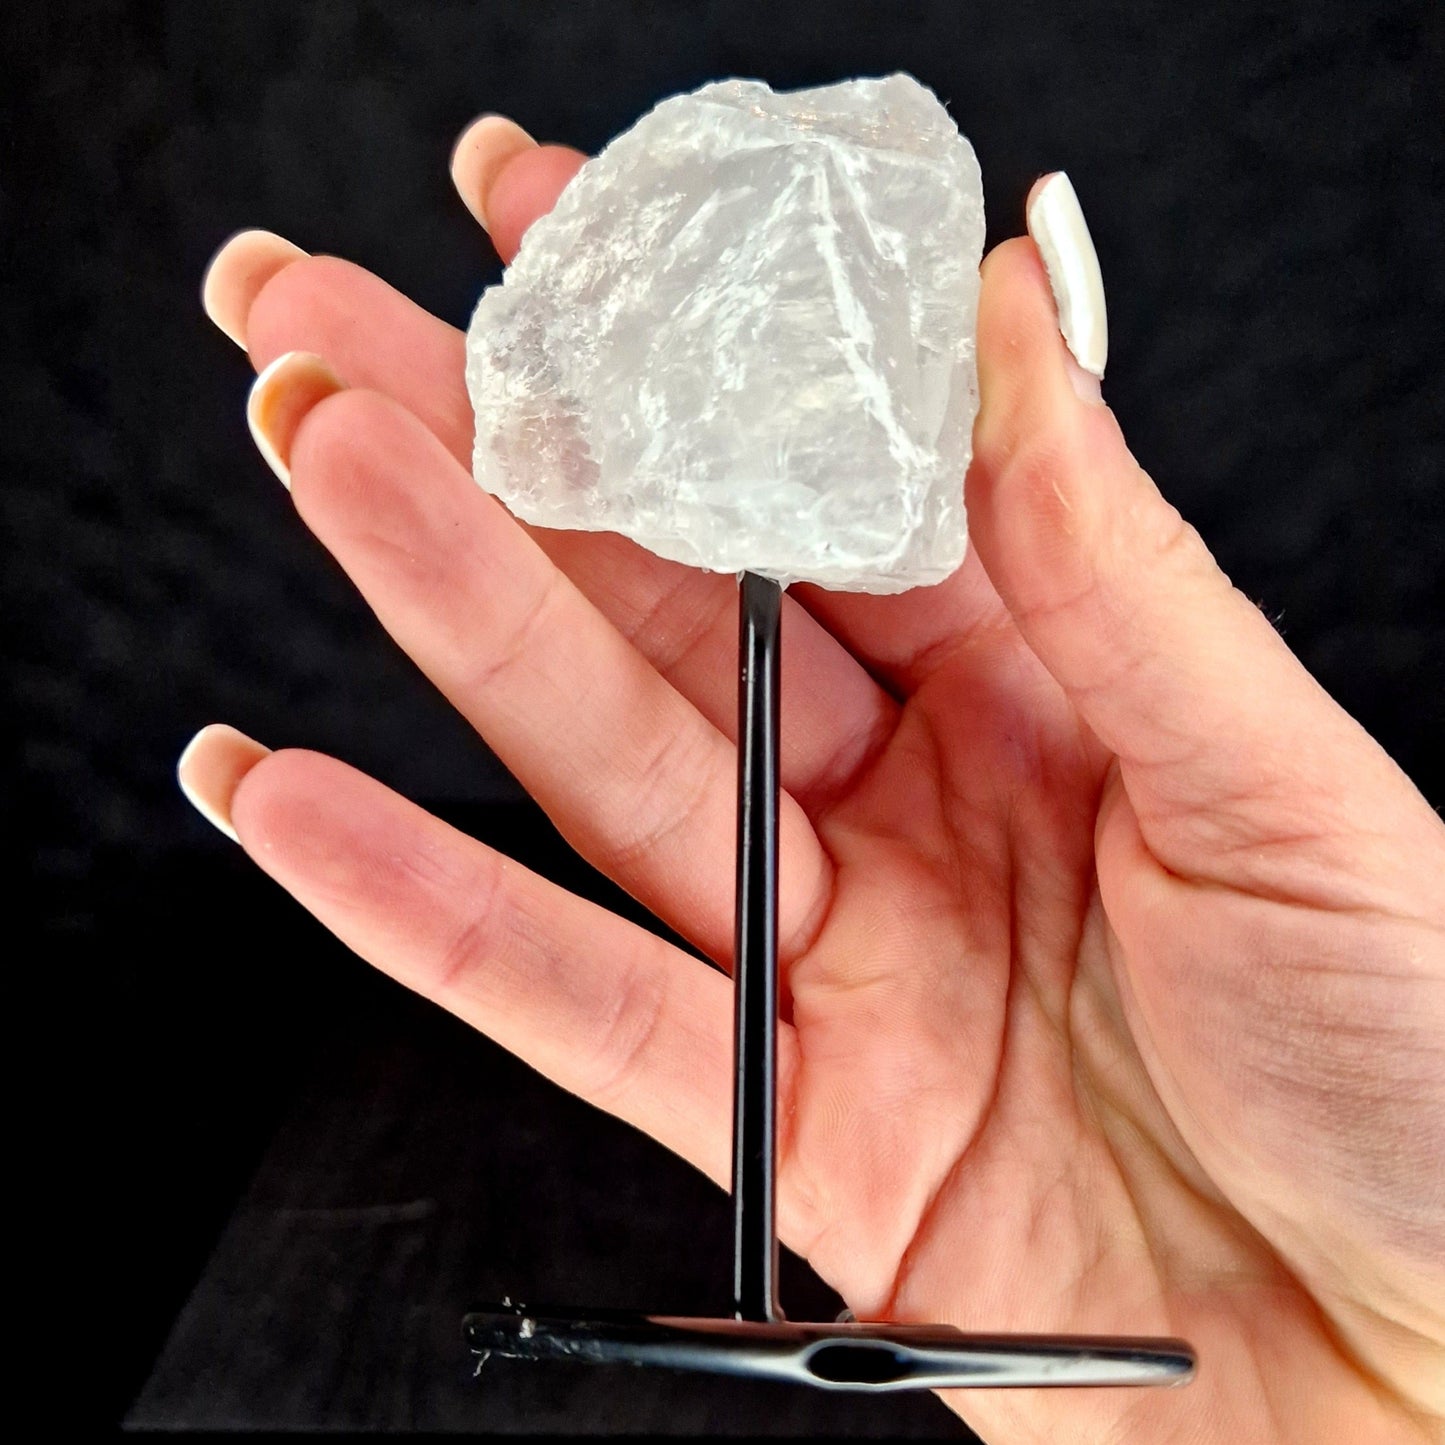 Combineer je Toussaint Interieur geurstokjes nu met deze prachtige ruwe bergkristal op een Metalen Standaard. Bergkristal wordt beschouwd als een extreem krachtig kristal en is energieversterker. Het stimuleert de geest en het lichaam en geeft energie, waardoor je je in alle opzichten goed voelt. Bergkristal zorgt voor een zuiverende werking in de ruimte. Specificaties: Materiaal: Bergkristal Afmetingen: ± 12 cm Eenheid: 1 stuk